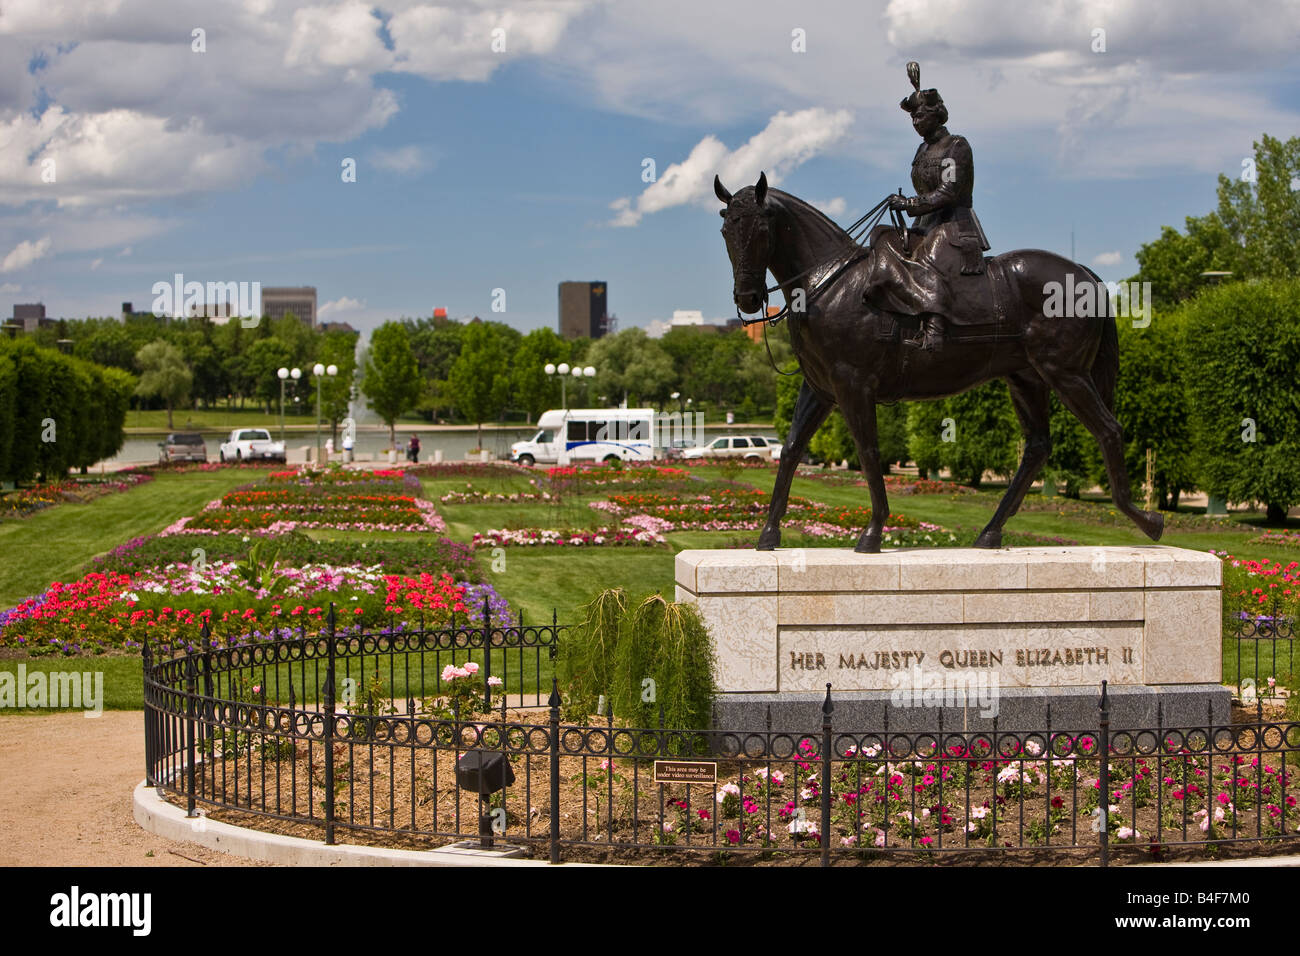 Equestrian statue of Queen Elizabeth II in the Queen Elizabeth II Gardens, City of Regina, Saskatchewan, Canada. Stock Photo